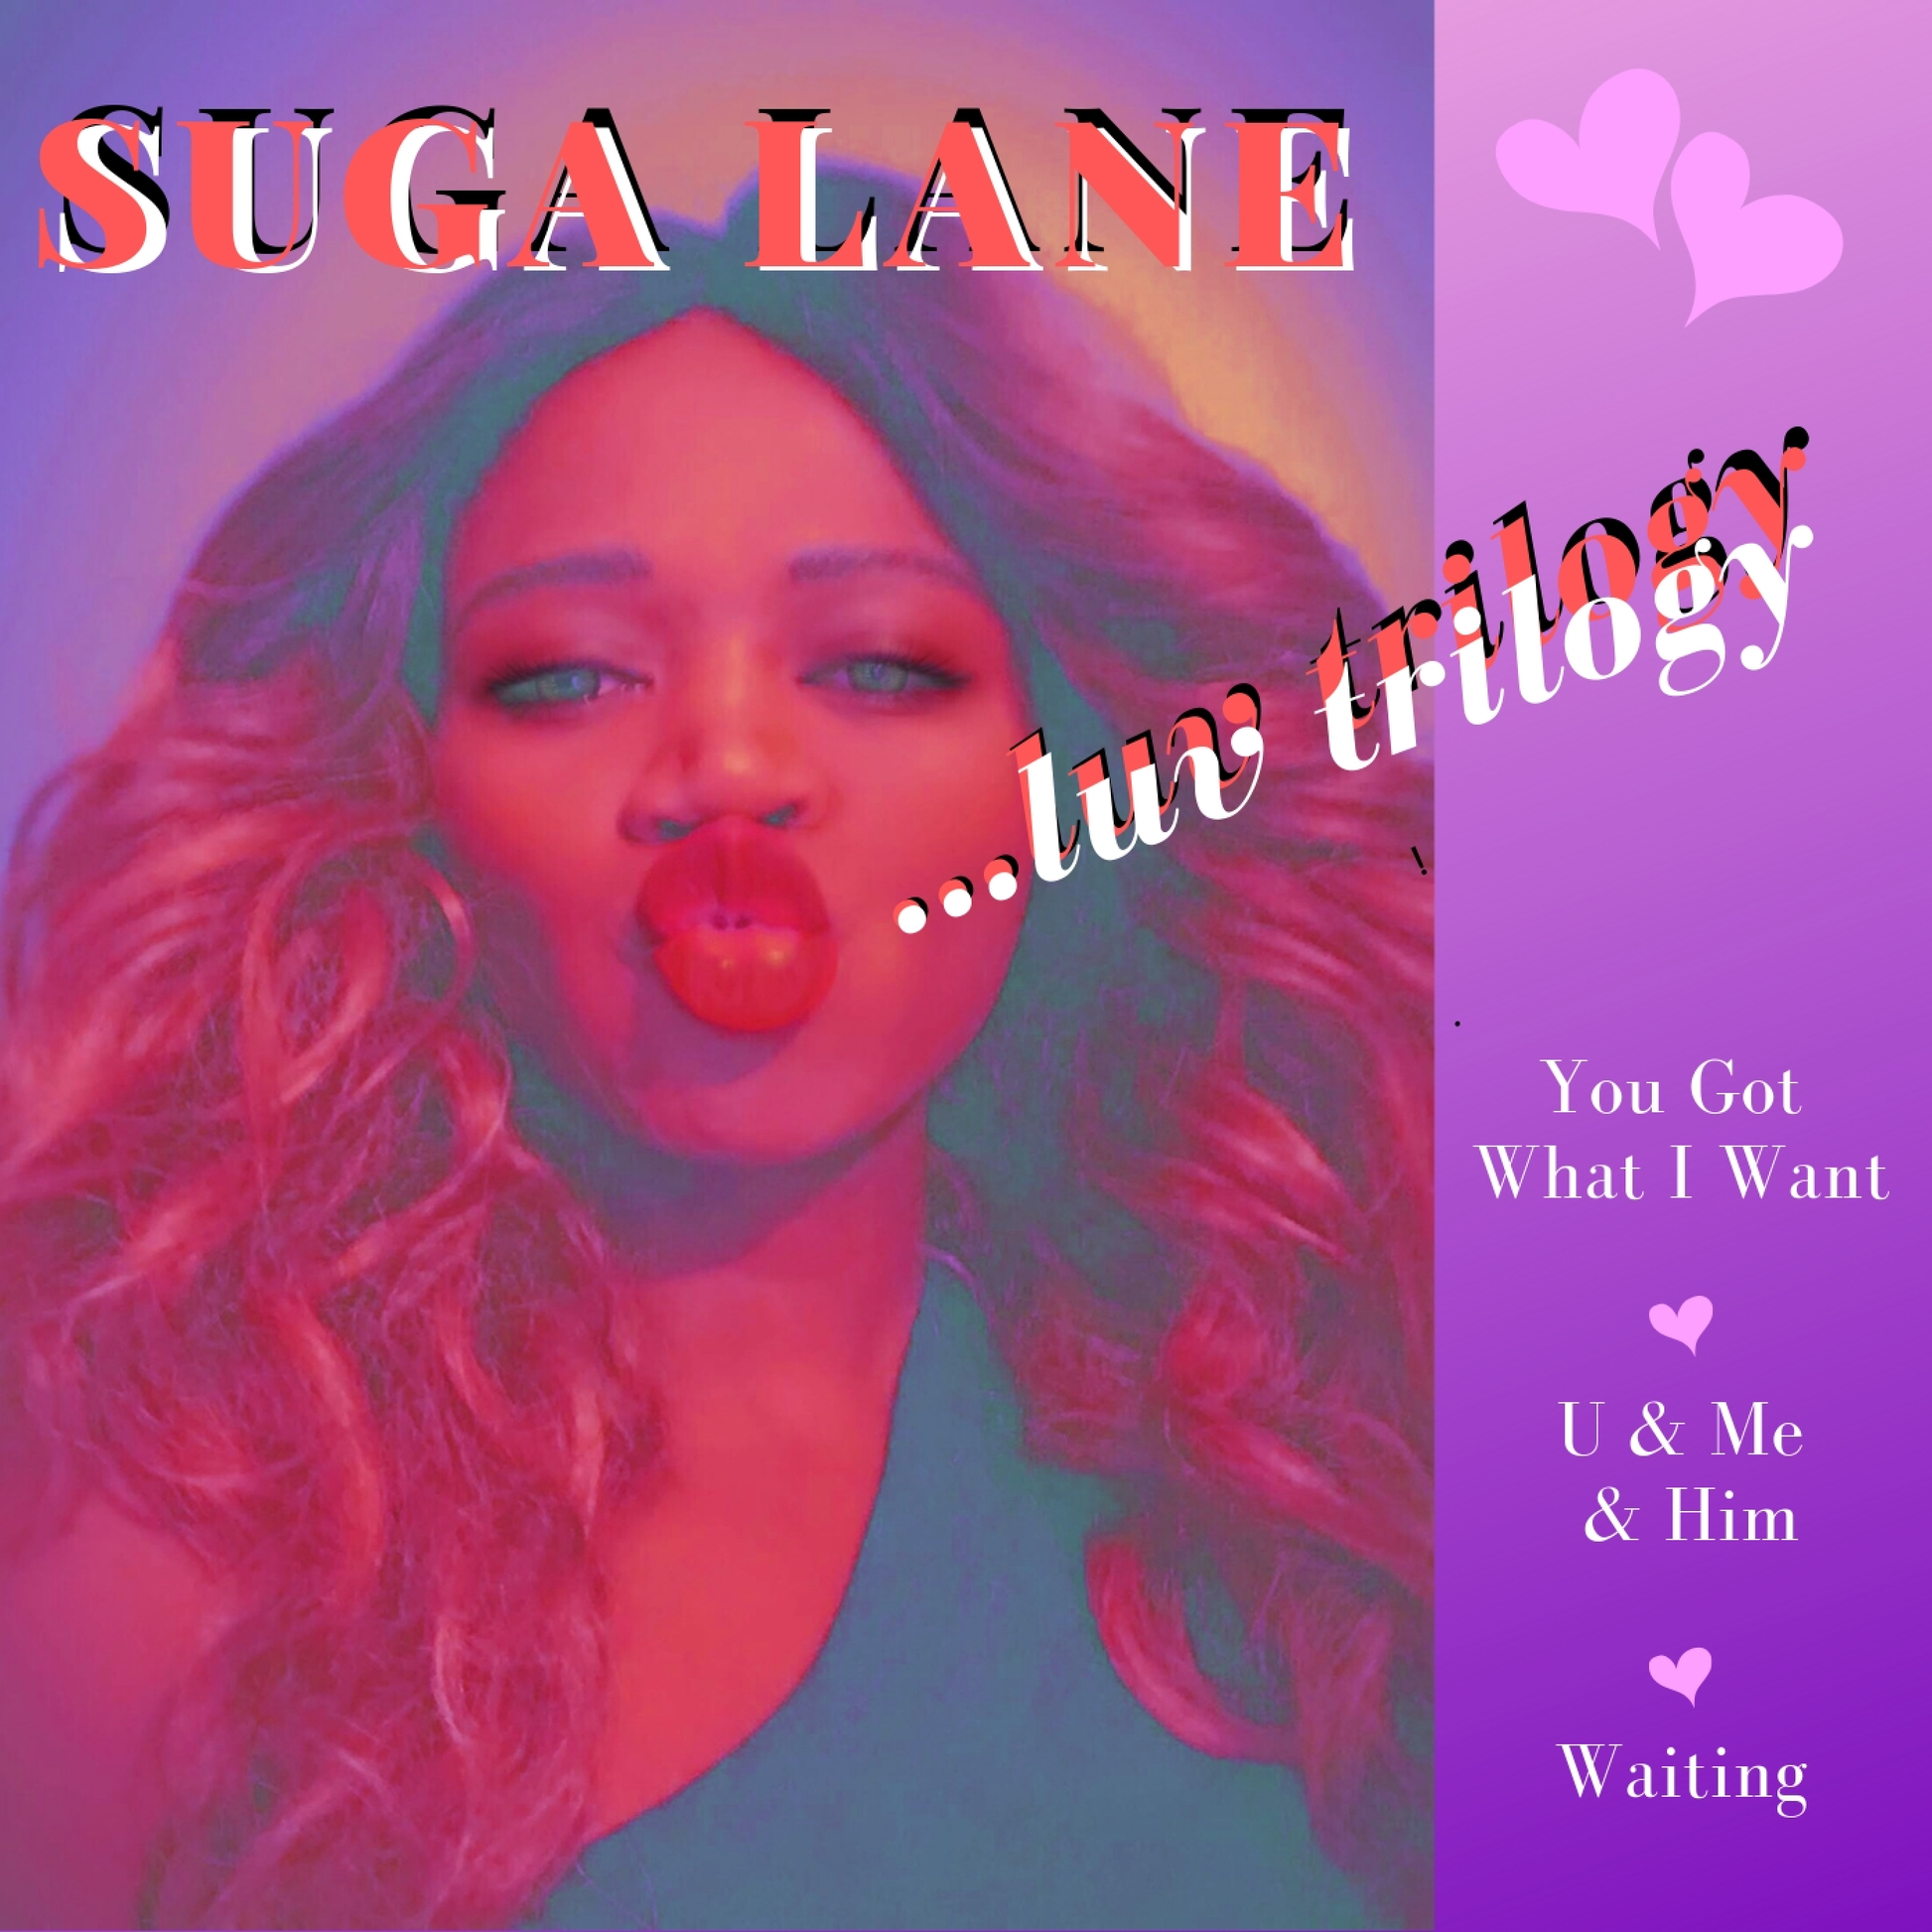 SUGA LANE - LUV TRILOGY EP ALBUM 3 SONGS SUGA LANE